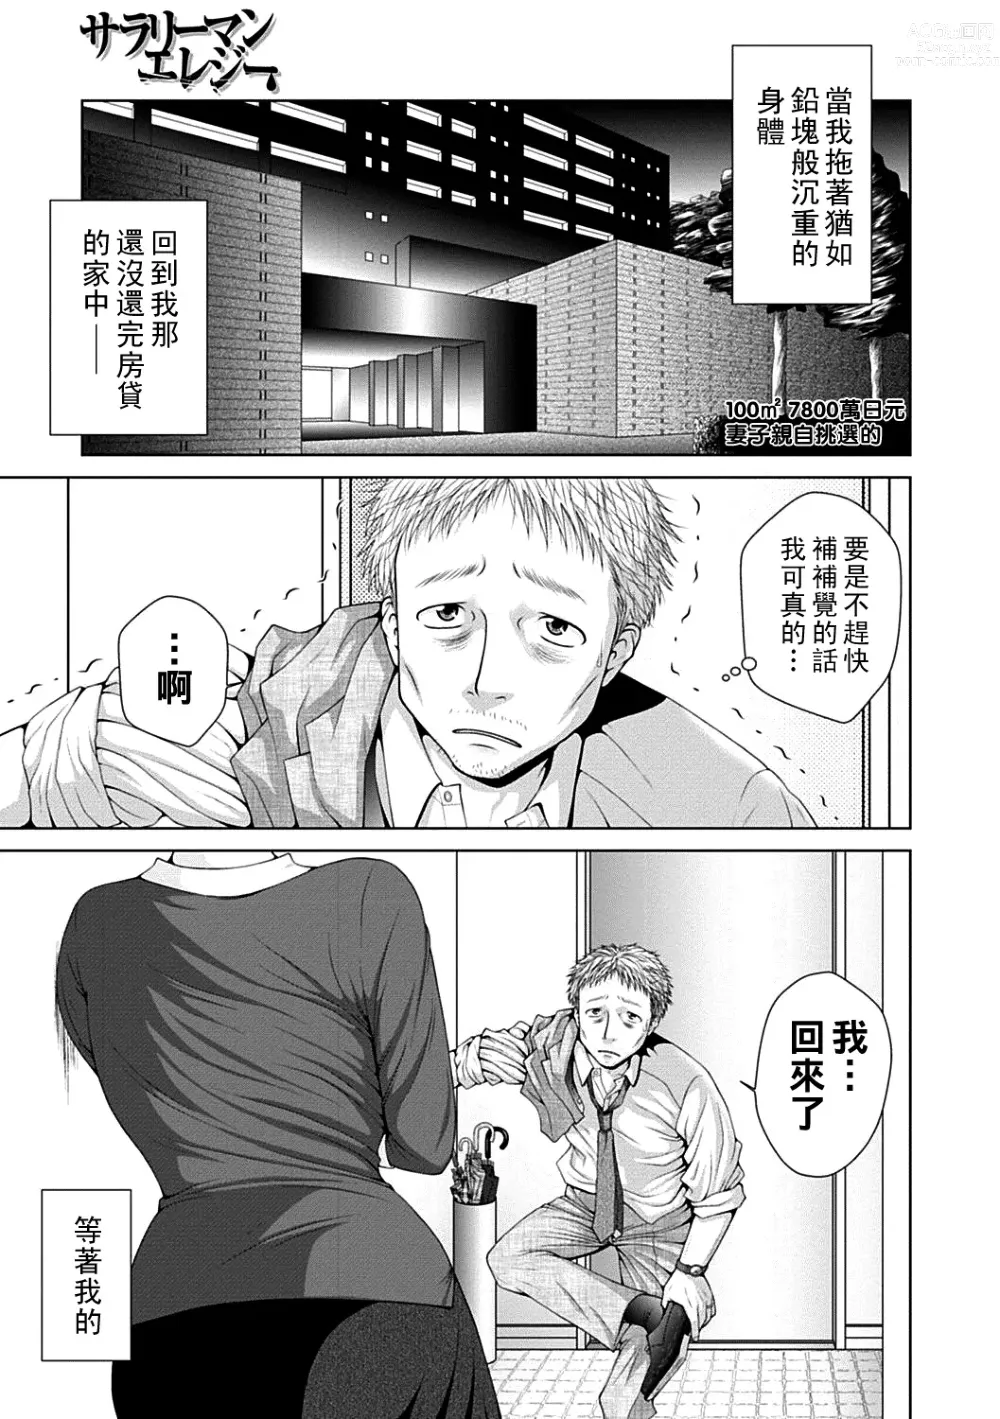 Page 1 of manga Salaryman  Elegy